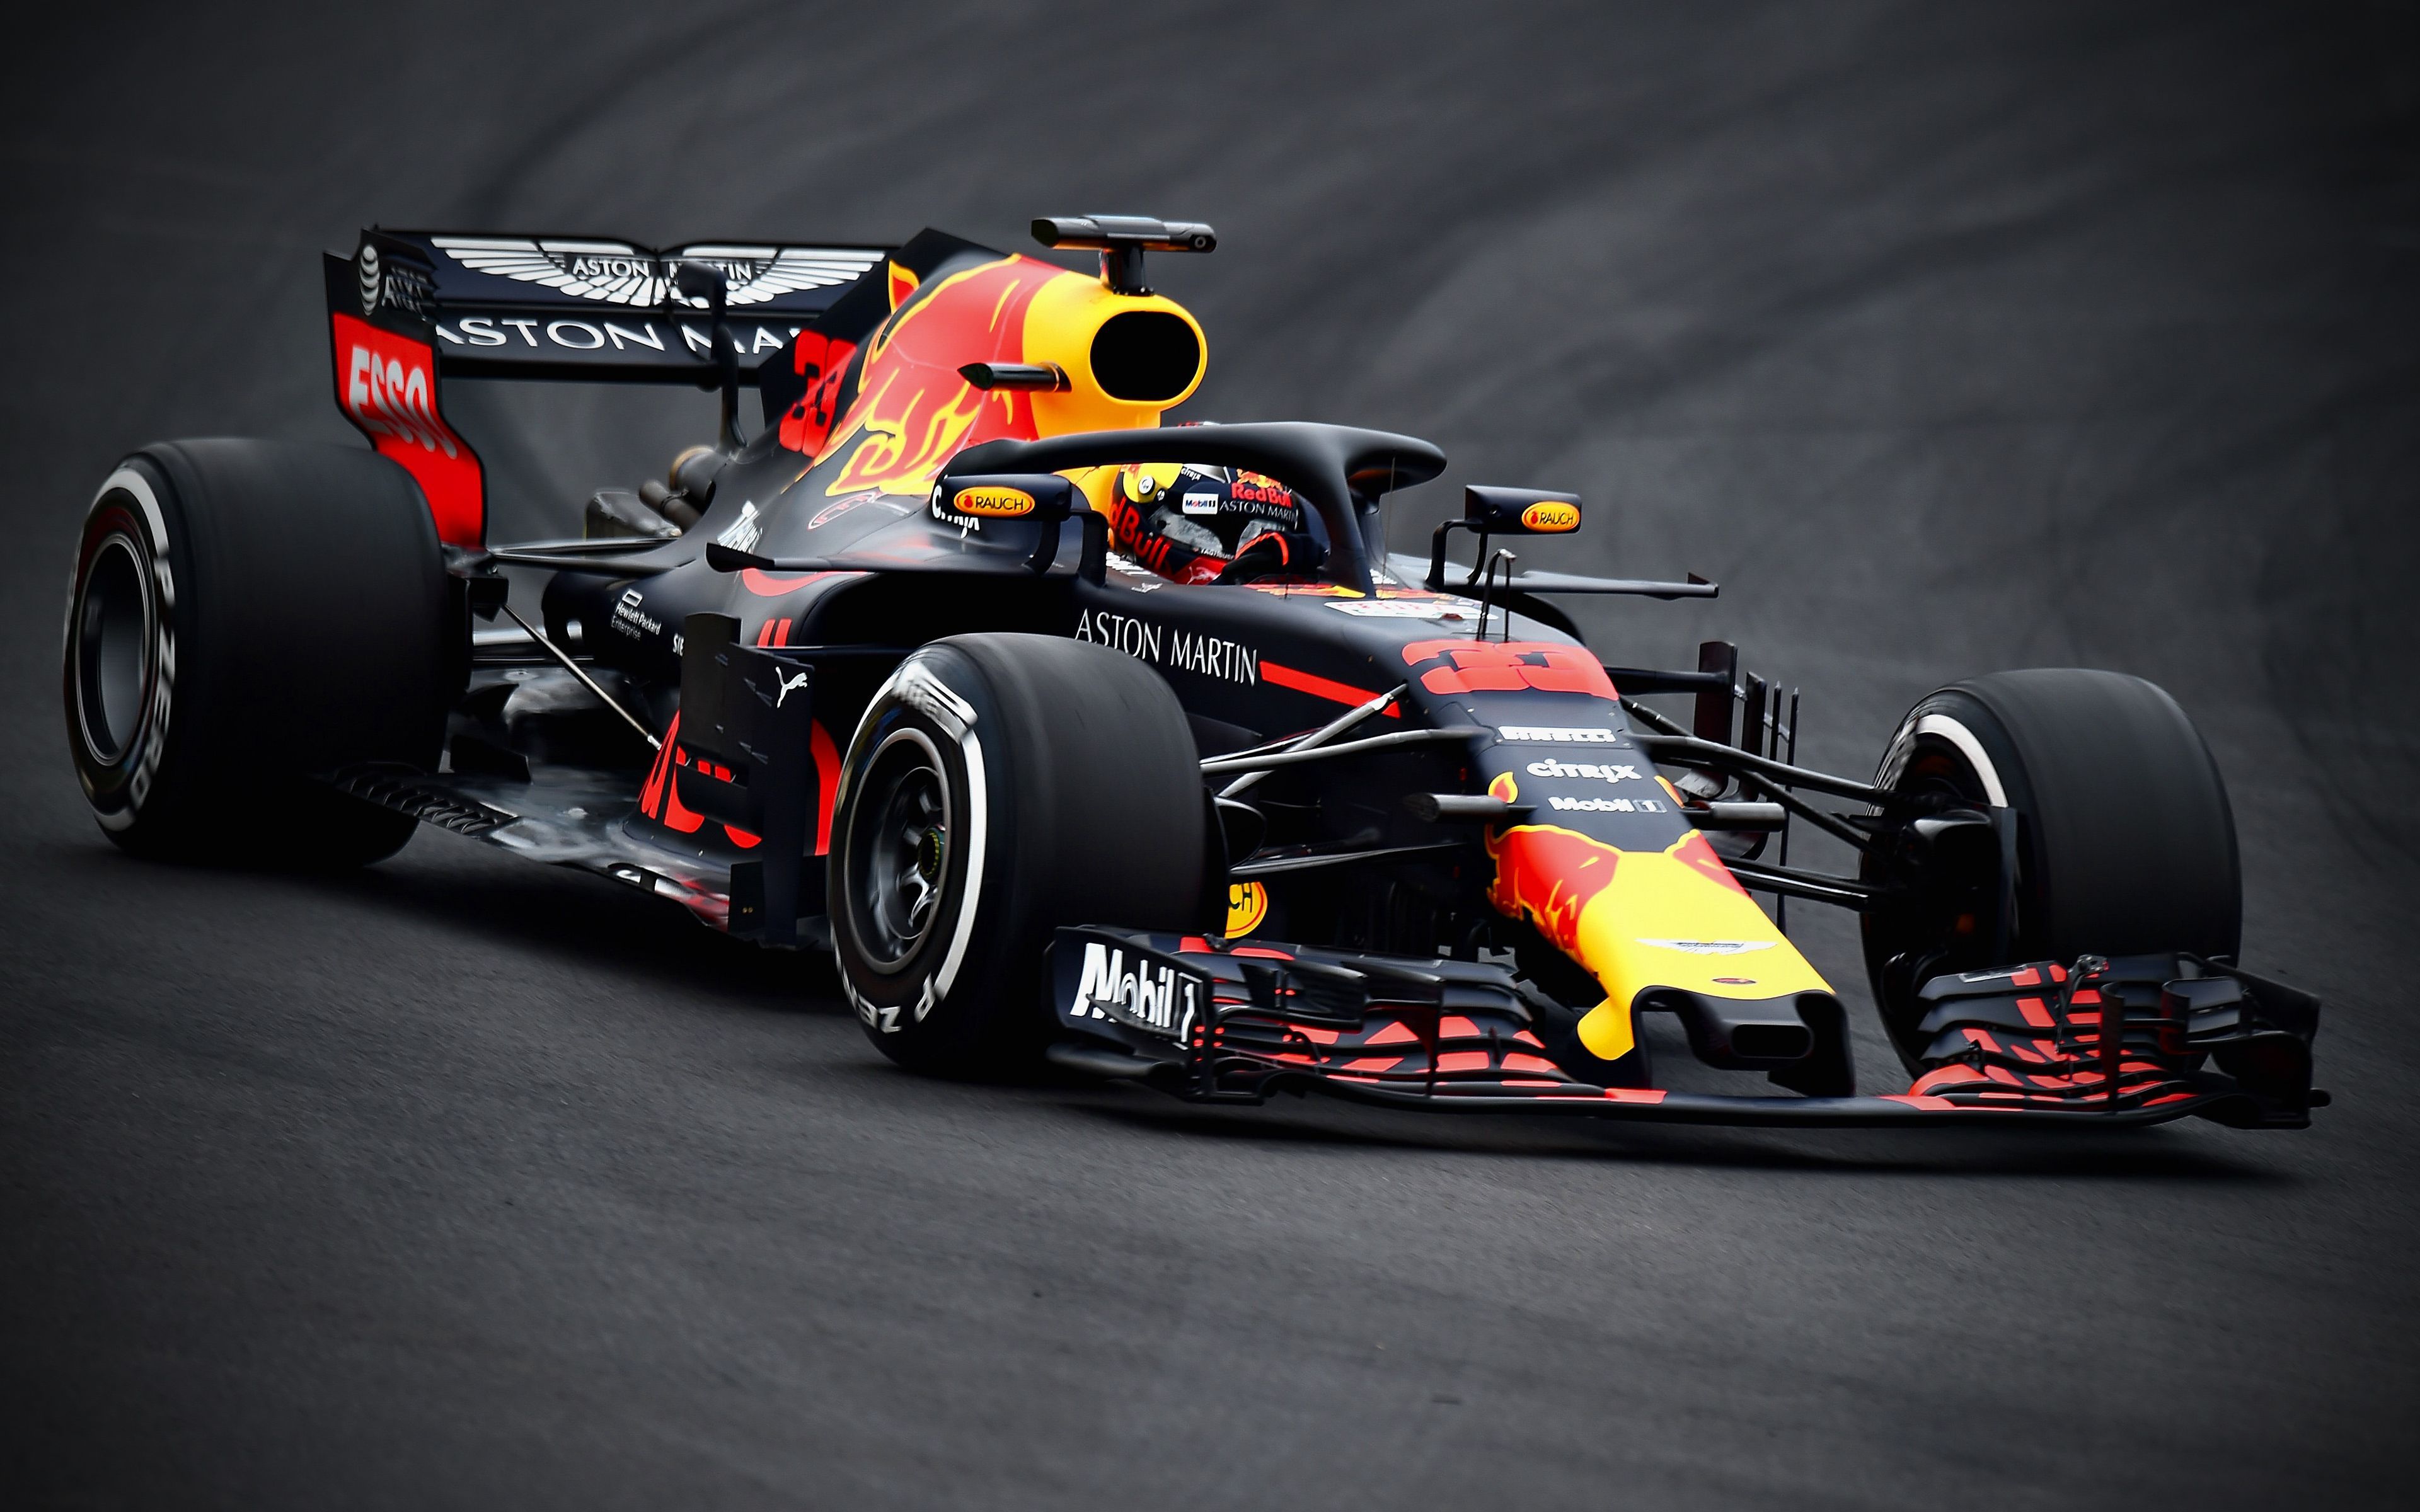 4k, Max Verstappen, Close Up, Raceway, 2018 Cars, F Formula 1